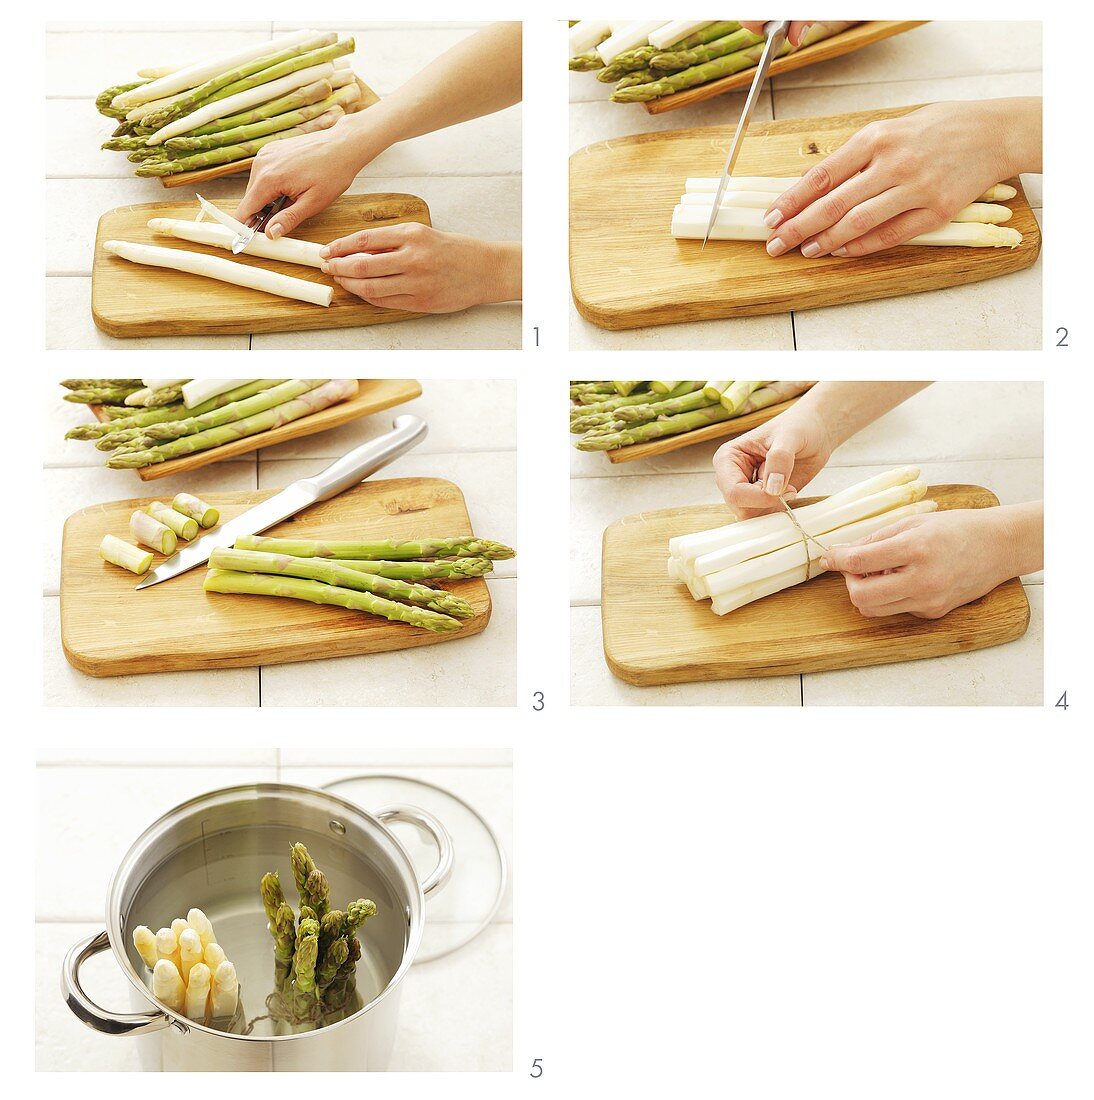 Preparing asparagus